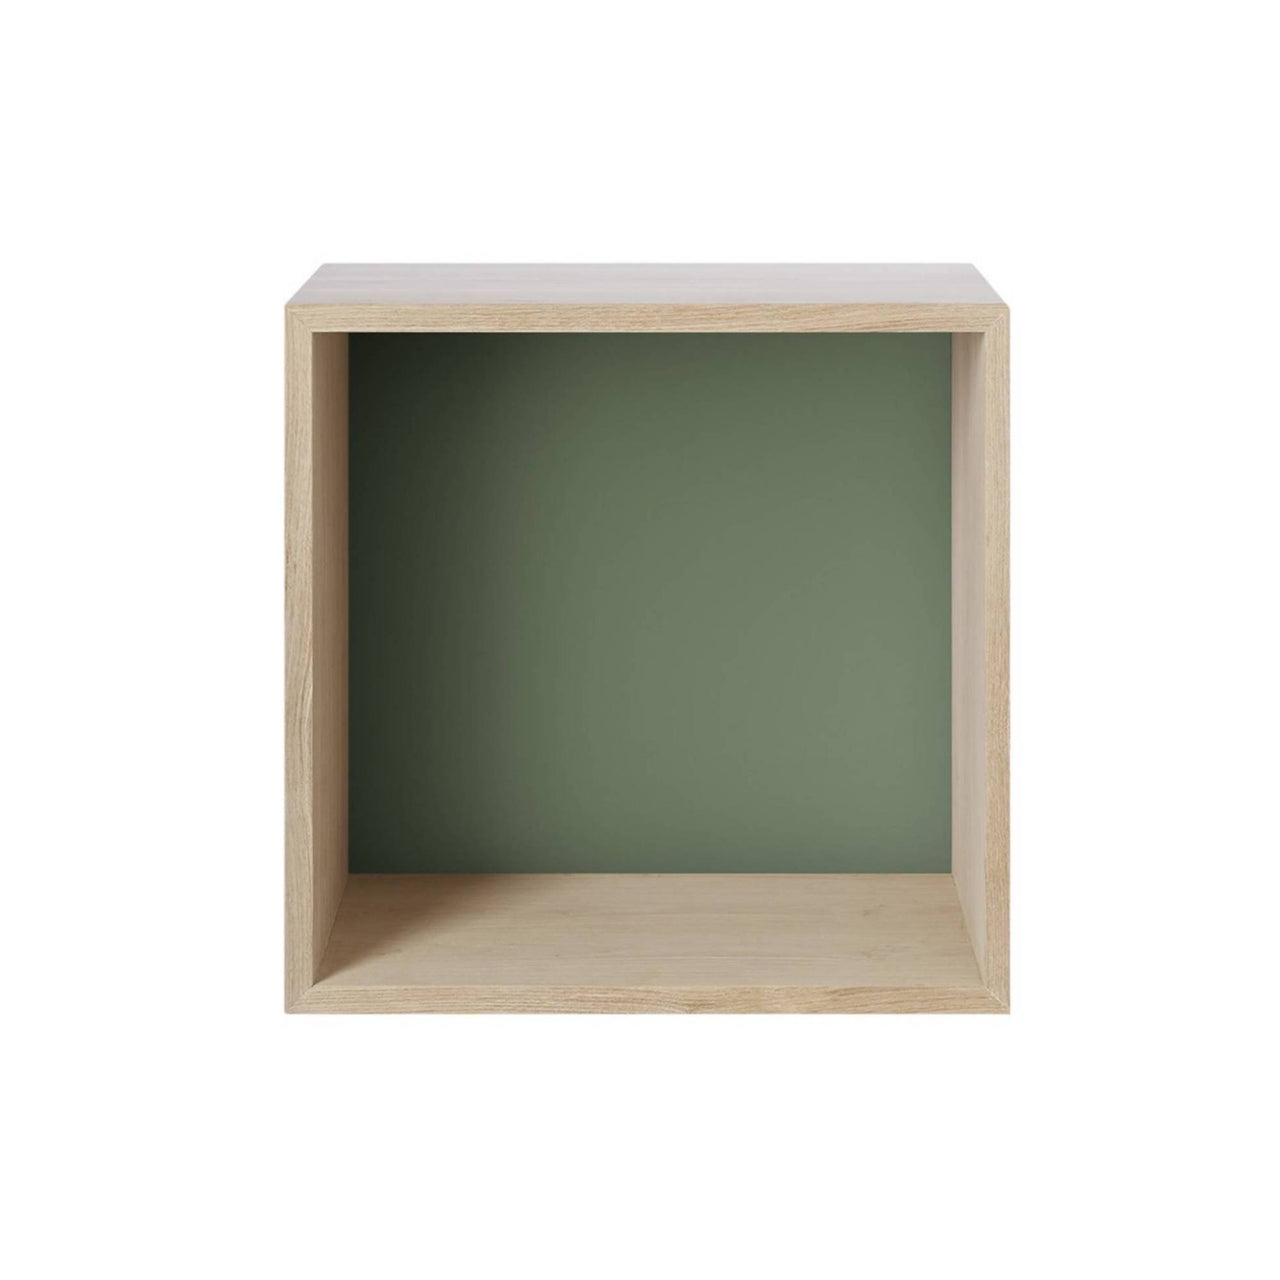 Stacked Storage 2.0: Backboard Module - Medium + Oak + Dusty Green